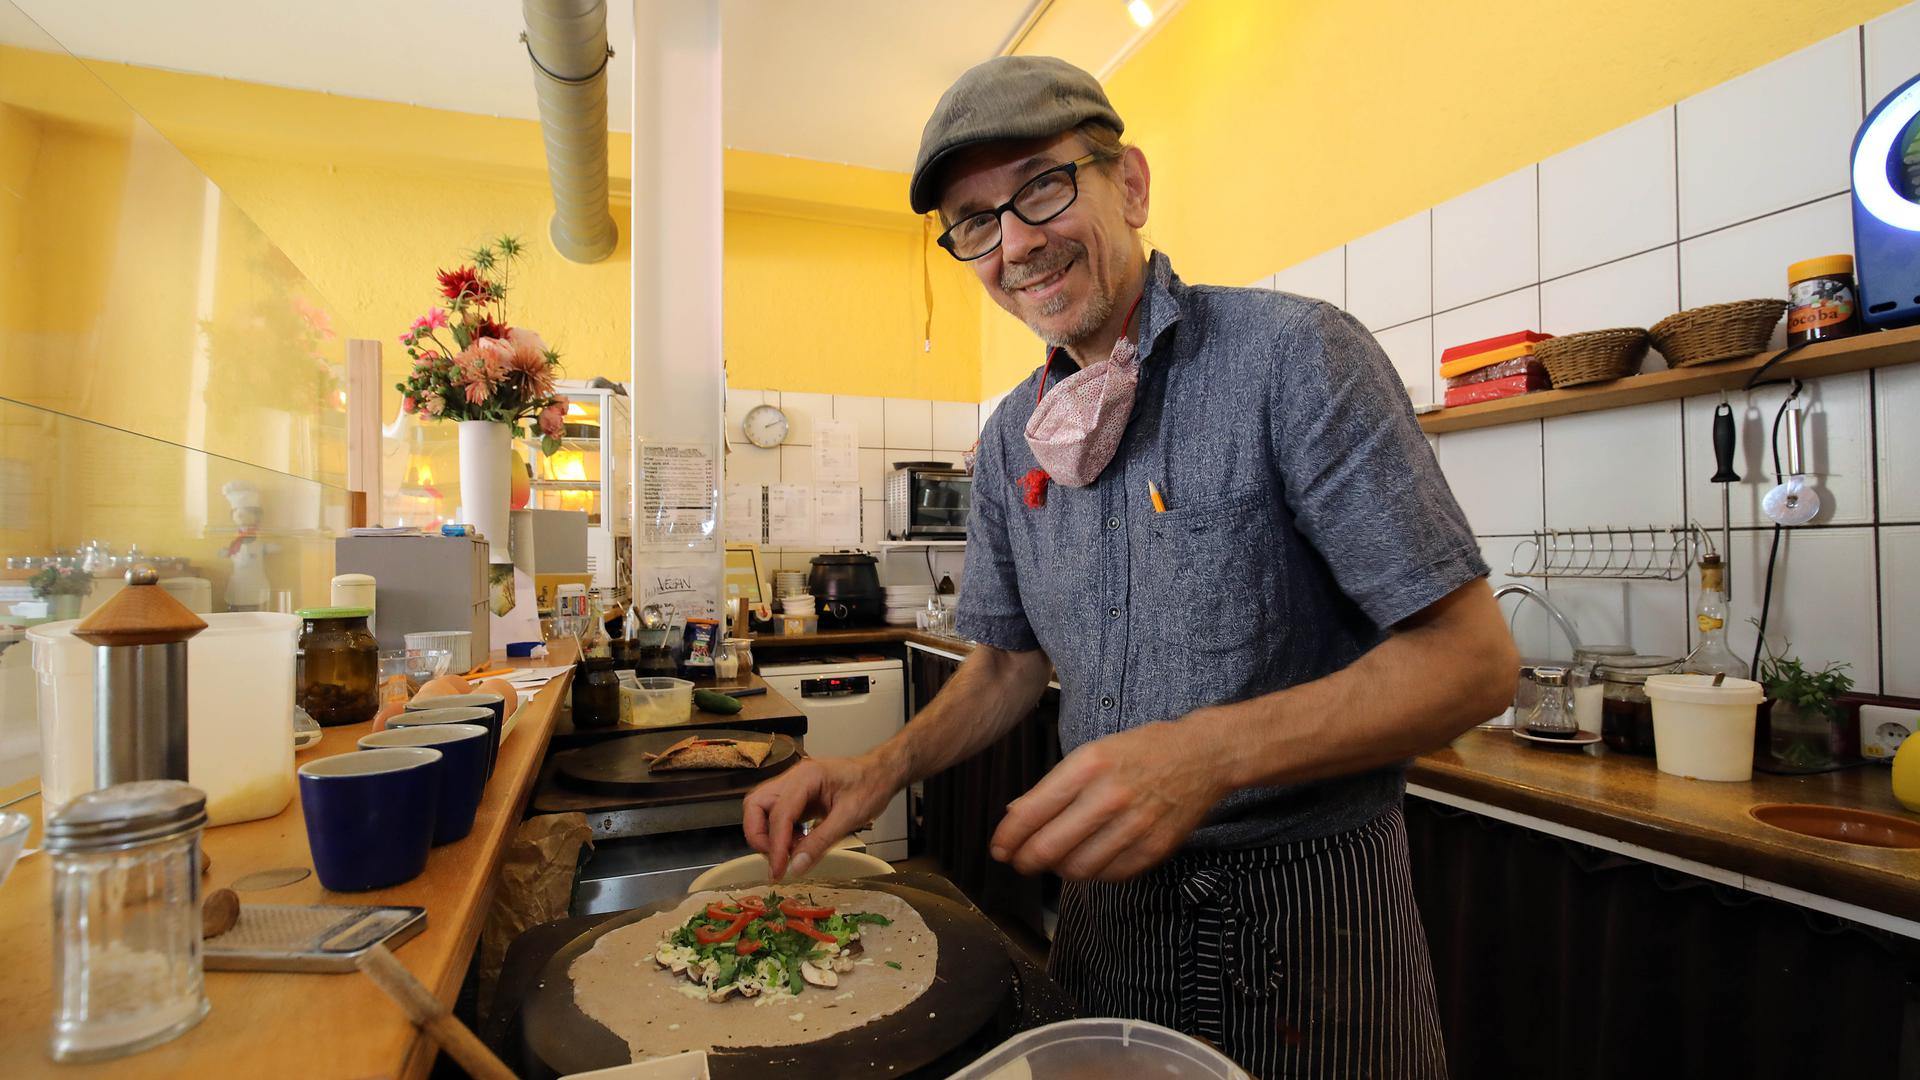 Leidenschaftlicher Pfannkuchenbäcker: Heiko Gsedl macht seit 20 Jahren, worauf er Lust hat: Crêpes in seinem Café Pan.